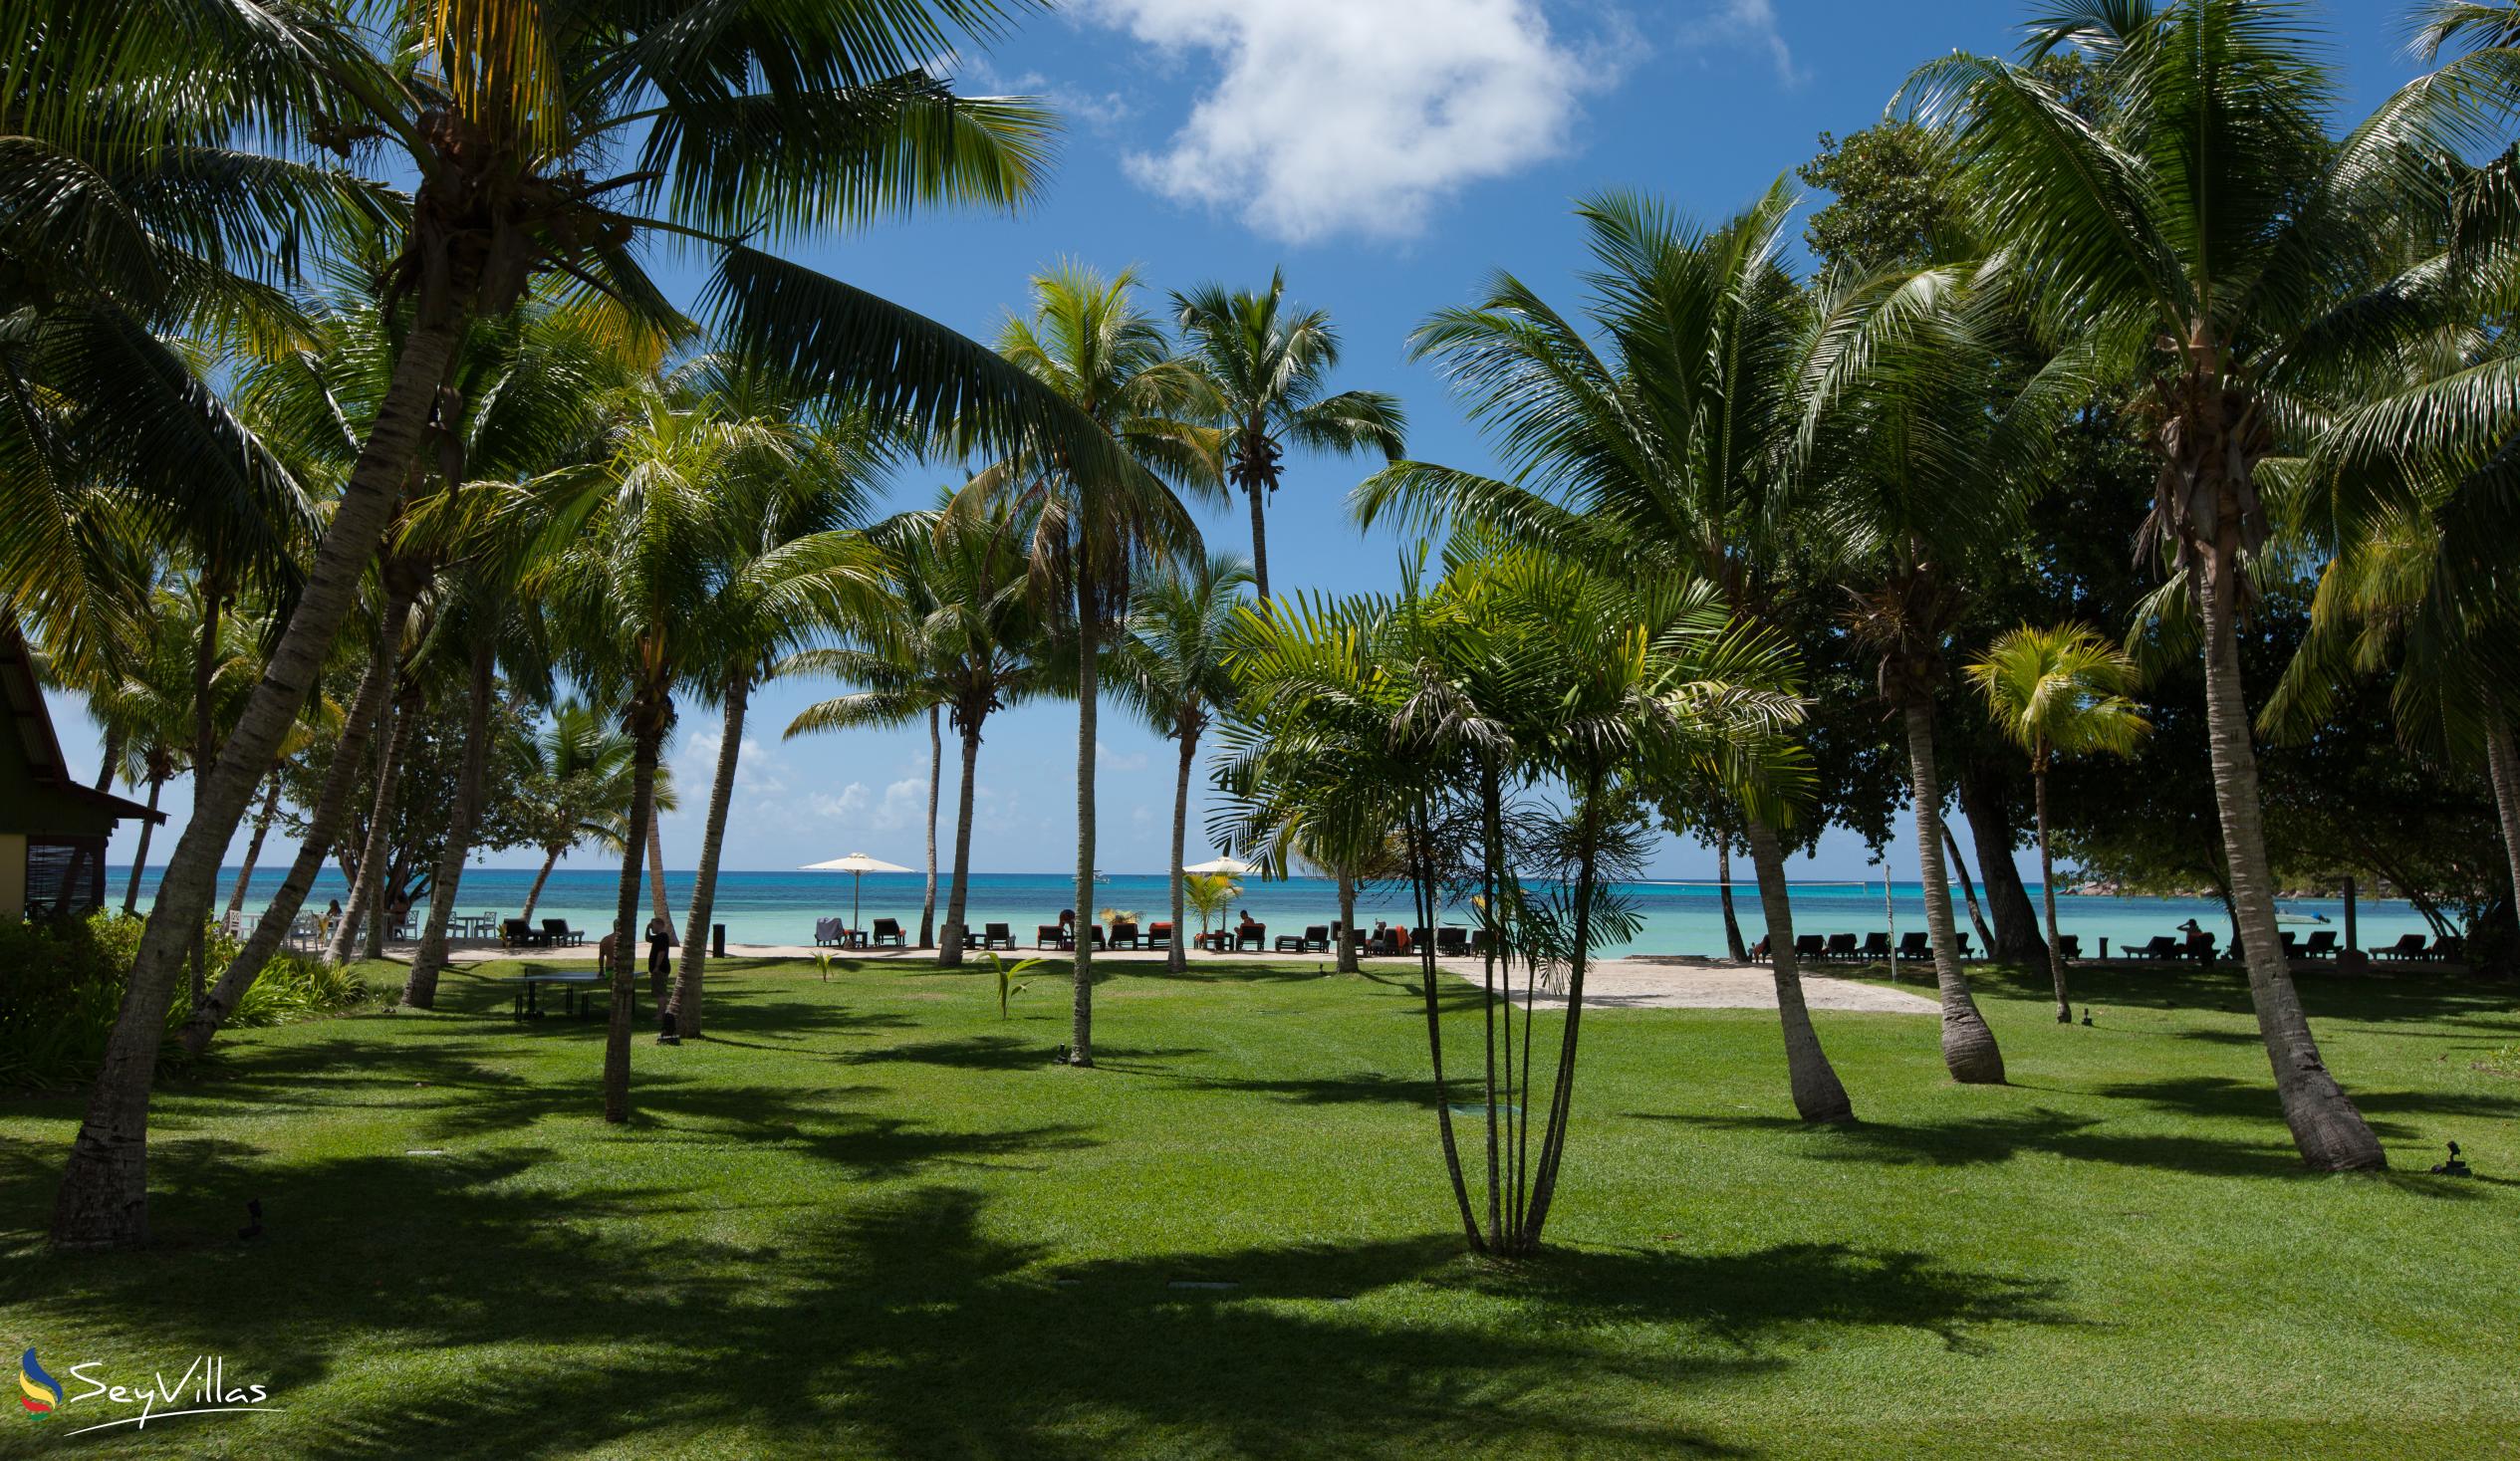 Foto 8: Paradise Sun Hotel - Aussenbereich - Praslin (Seychellen)